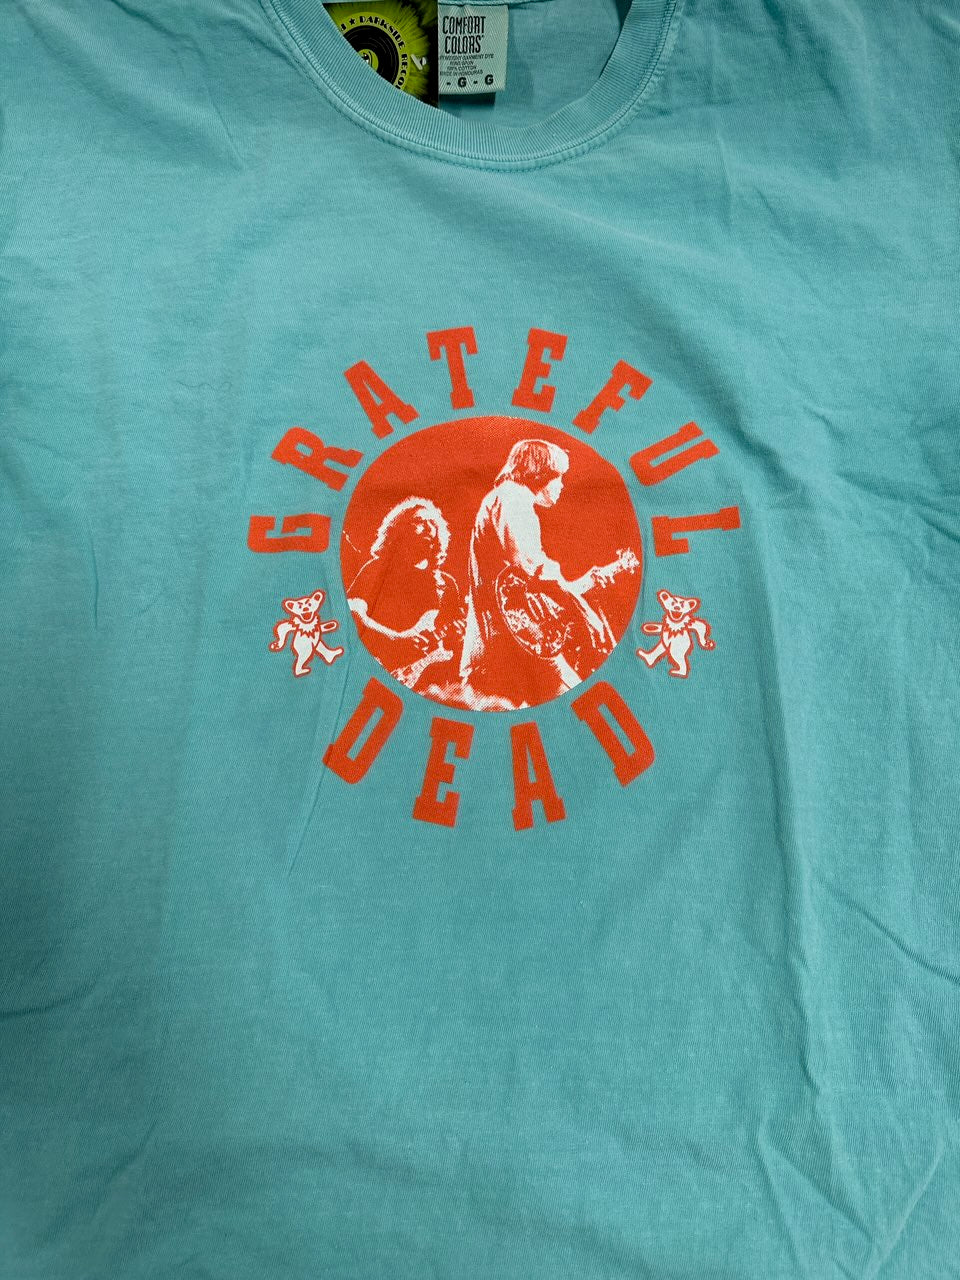 Grateful Dead Hardcore Style T-Shirt, Aqua Blue, L